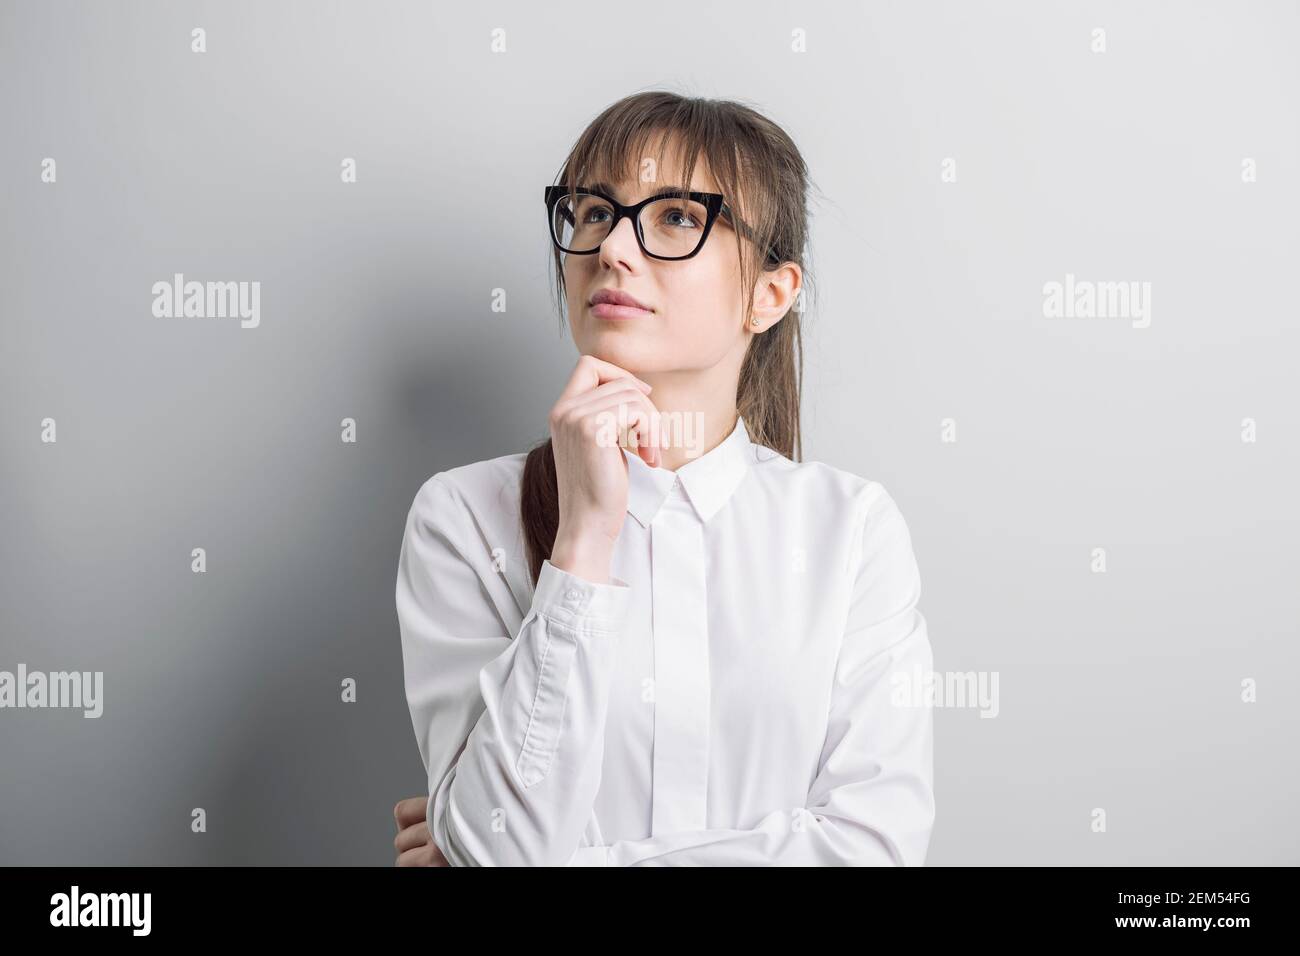 Ritratto di una giovane donna che indossa gli occhiali. Foto Stock